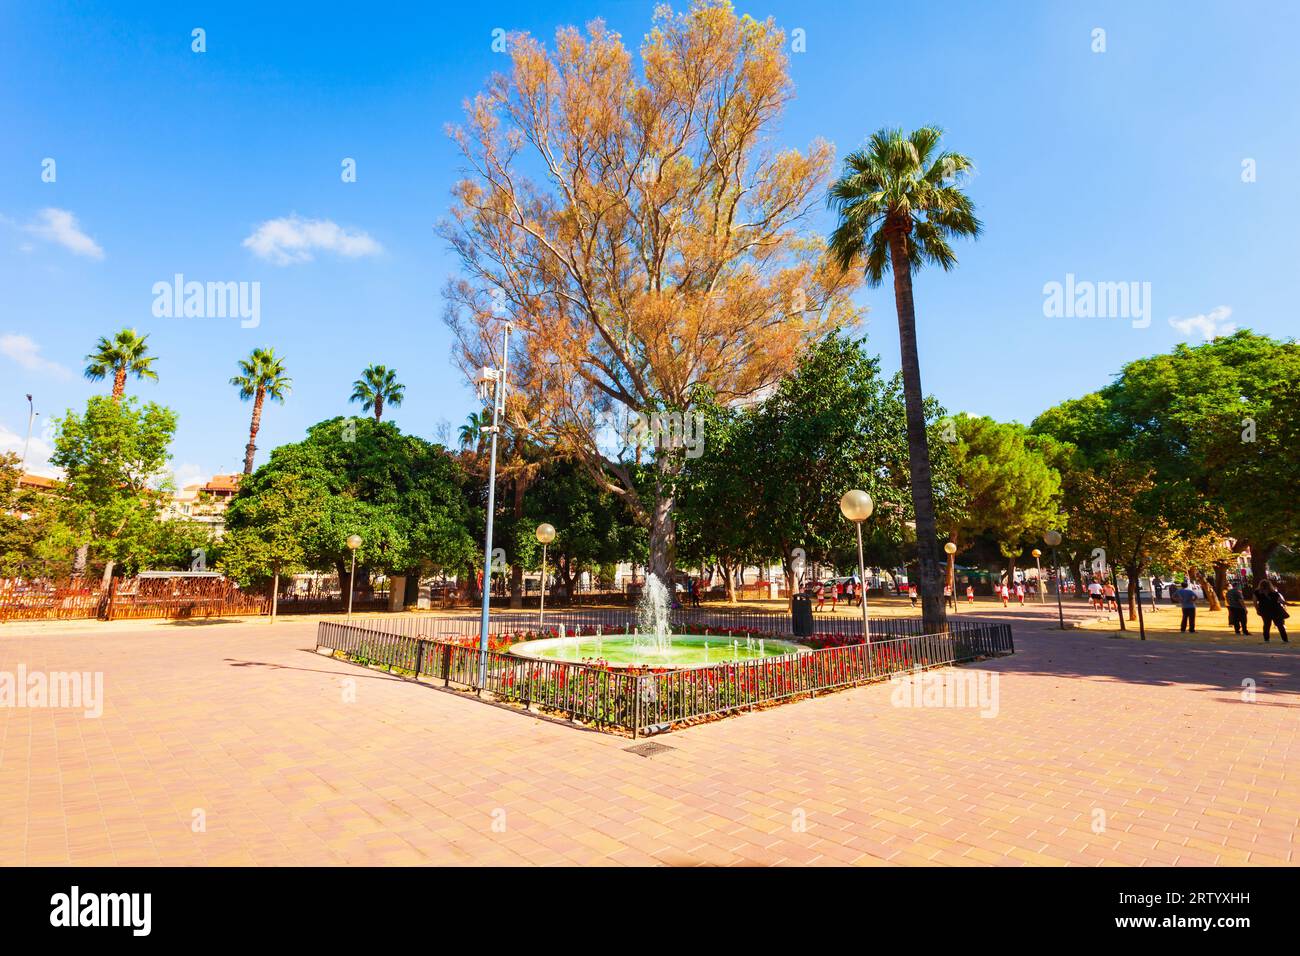 Huerto de Los Cipreses public park in the City of Murcia, Spain Stock Photo